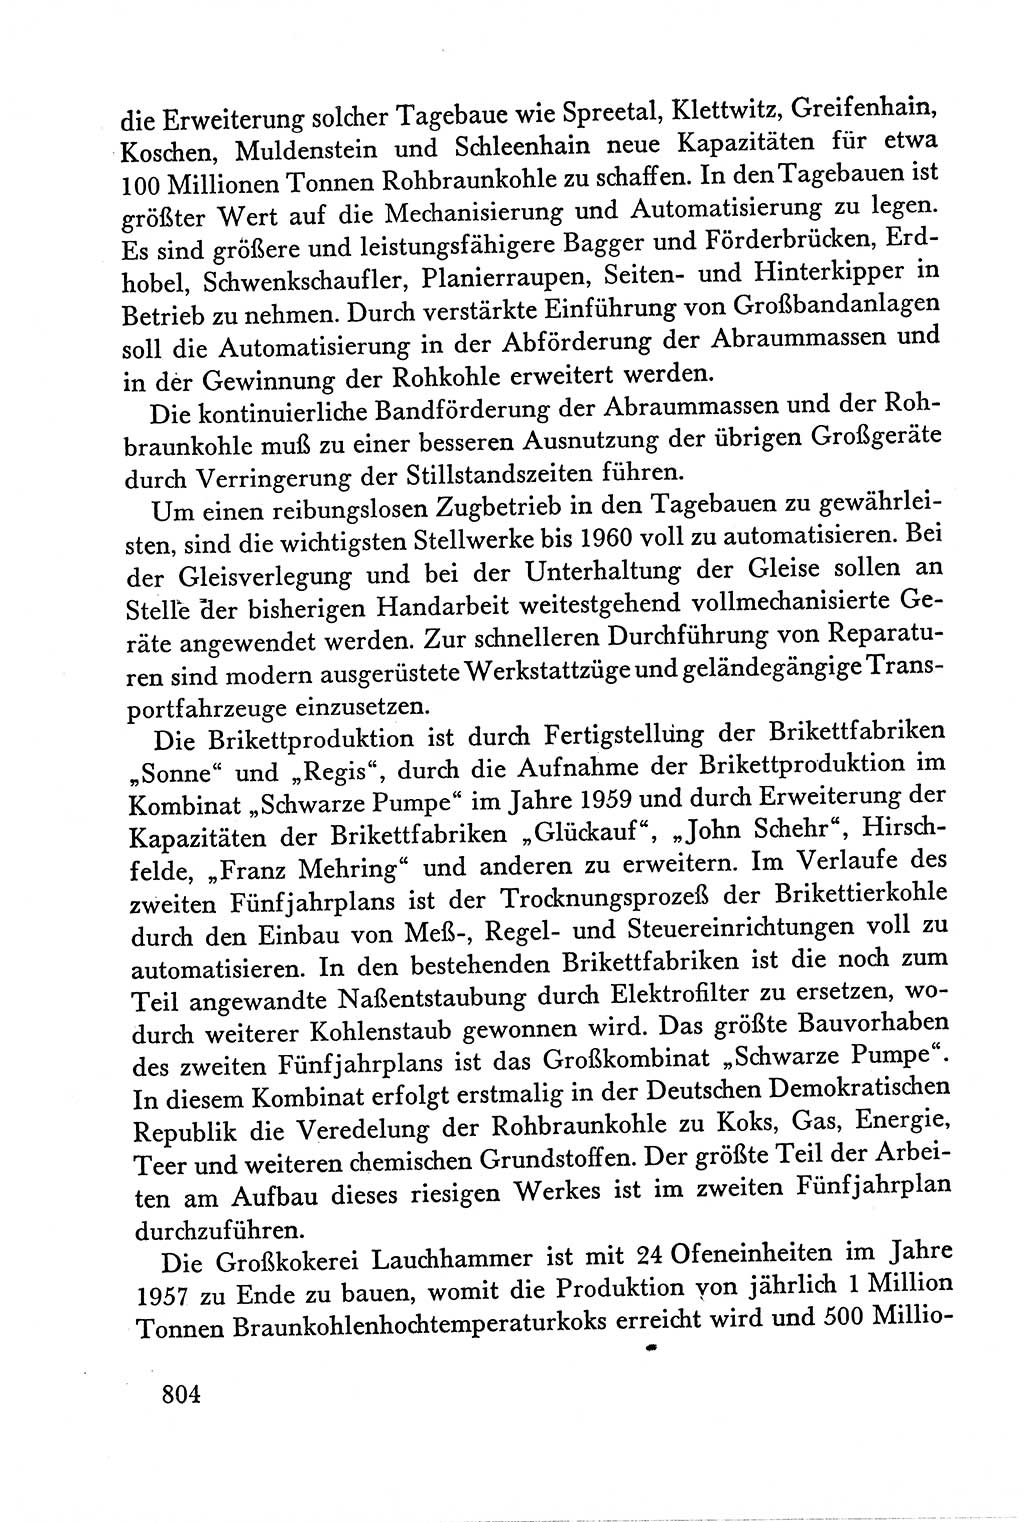 Dokumente der Sozialistischen Einheitspartei Deutschlands (SED) [Deutsche Demokratische Republik (DDR)] 1958-1959, Seite 804 (Dok. SED DDR 1958-1959, S. 804)